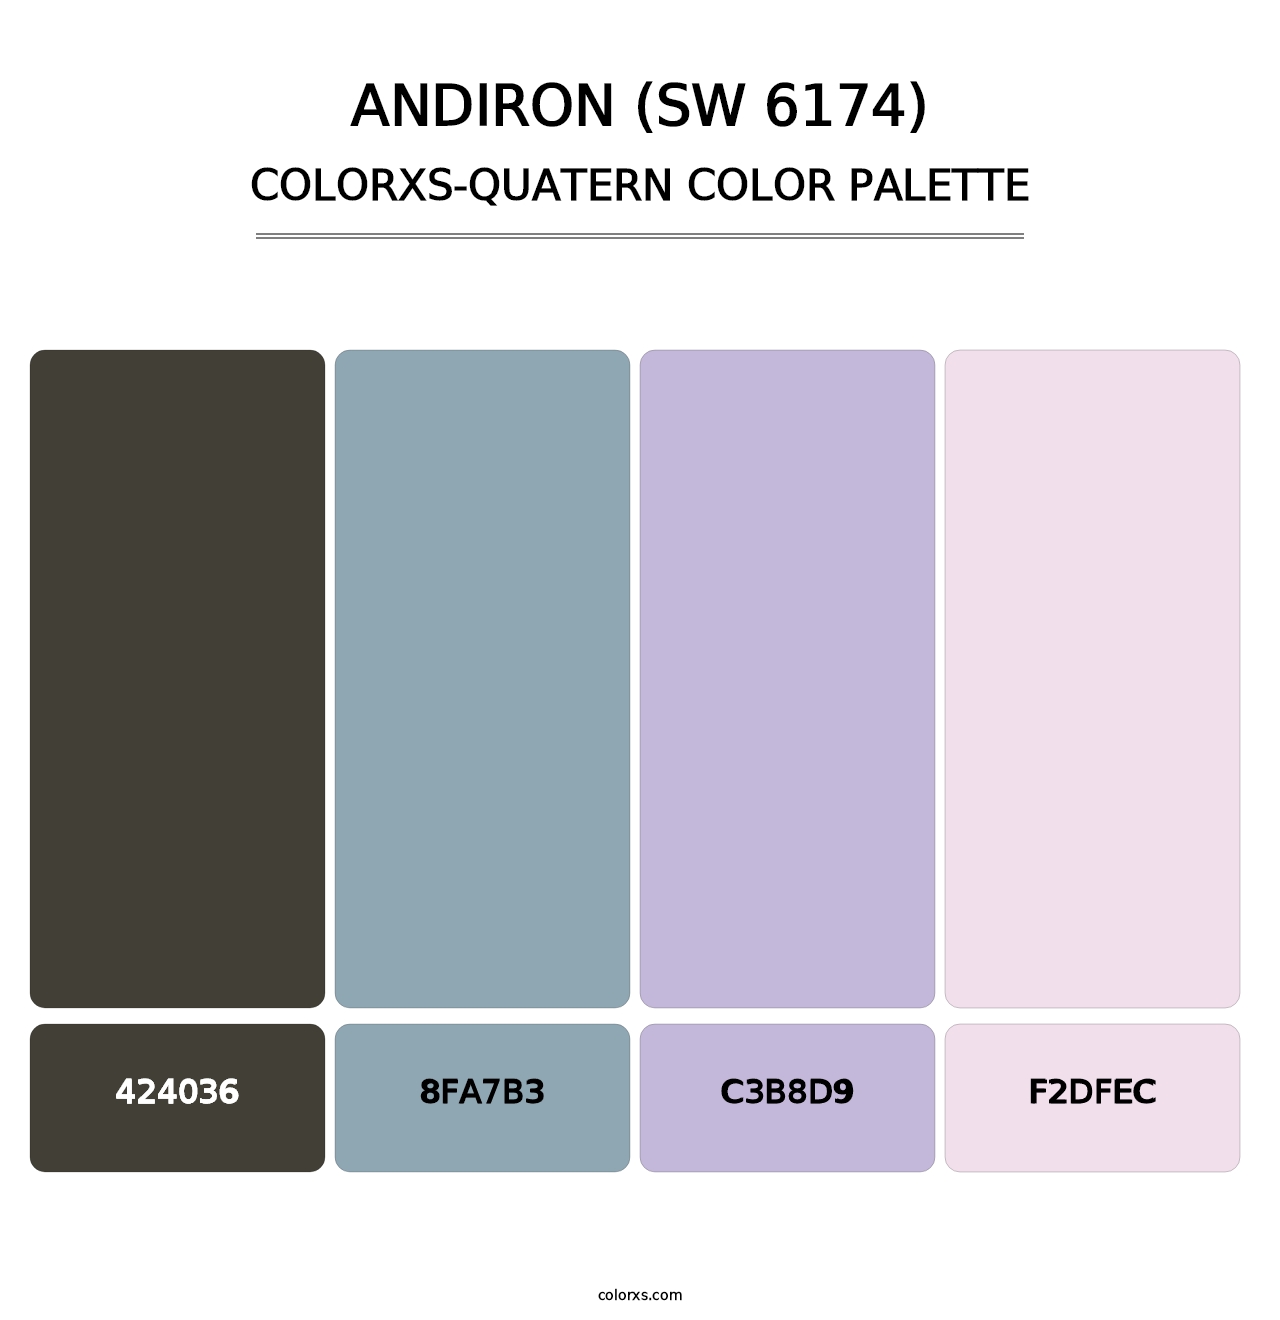 Andiron (SW 6174) - Colorxs Quatern Palette